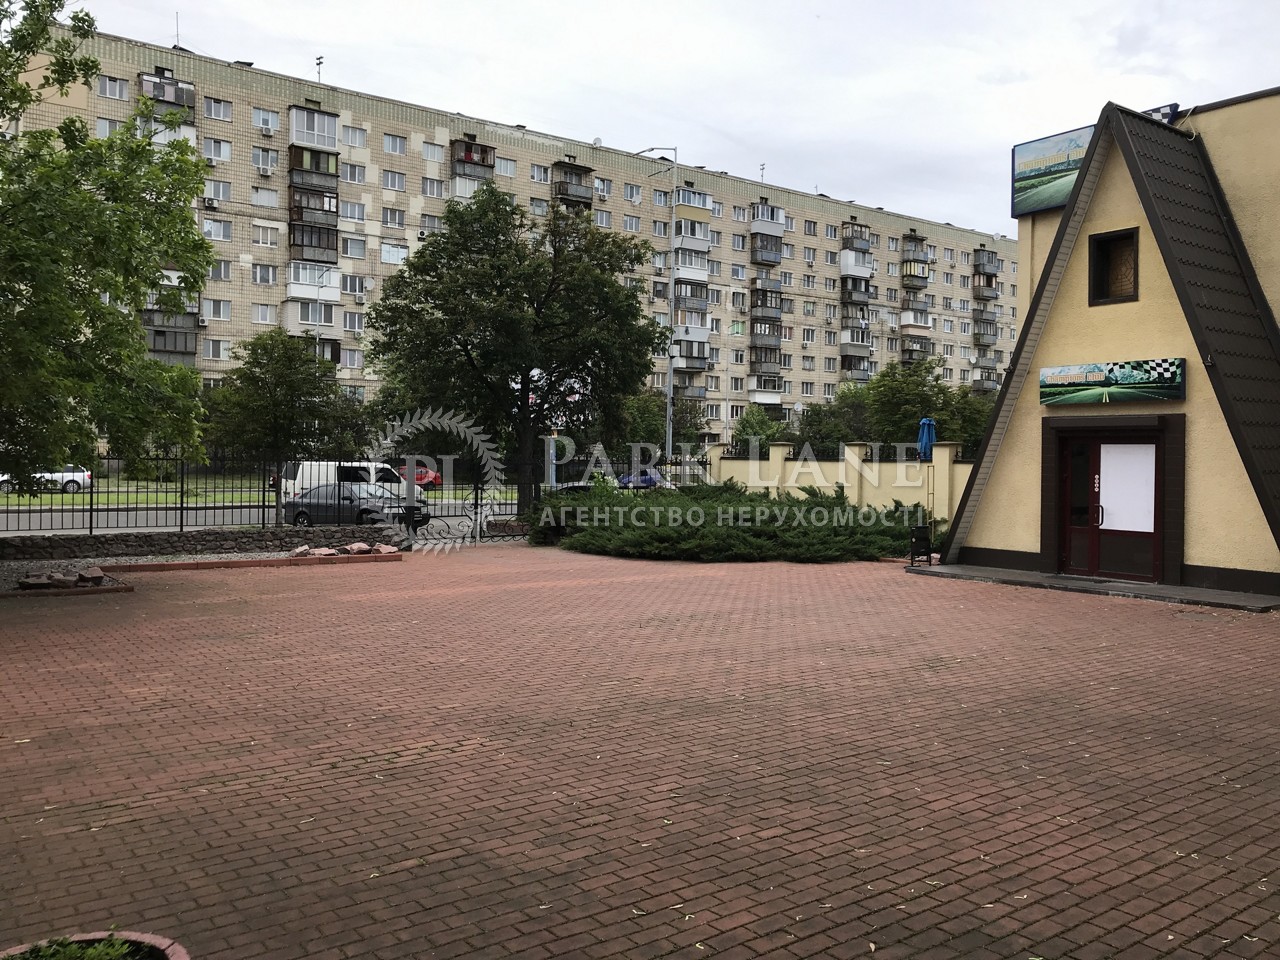  Нежилое помещение, J-31080, Шолом-Алейхема, Киев - Фото 4